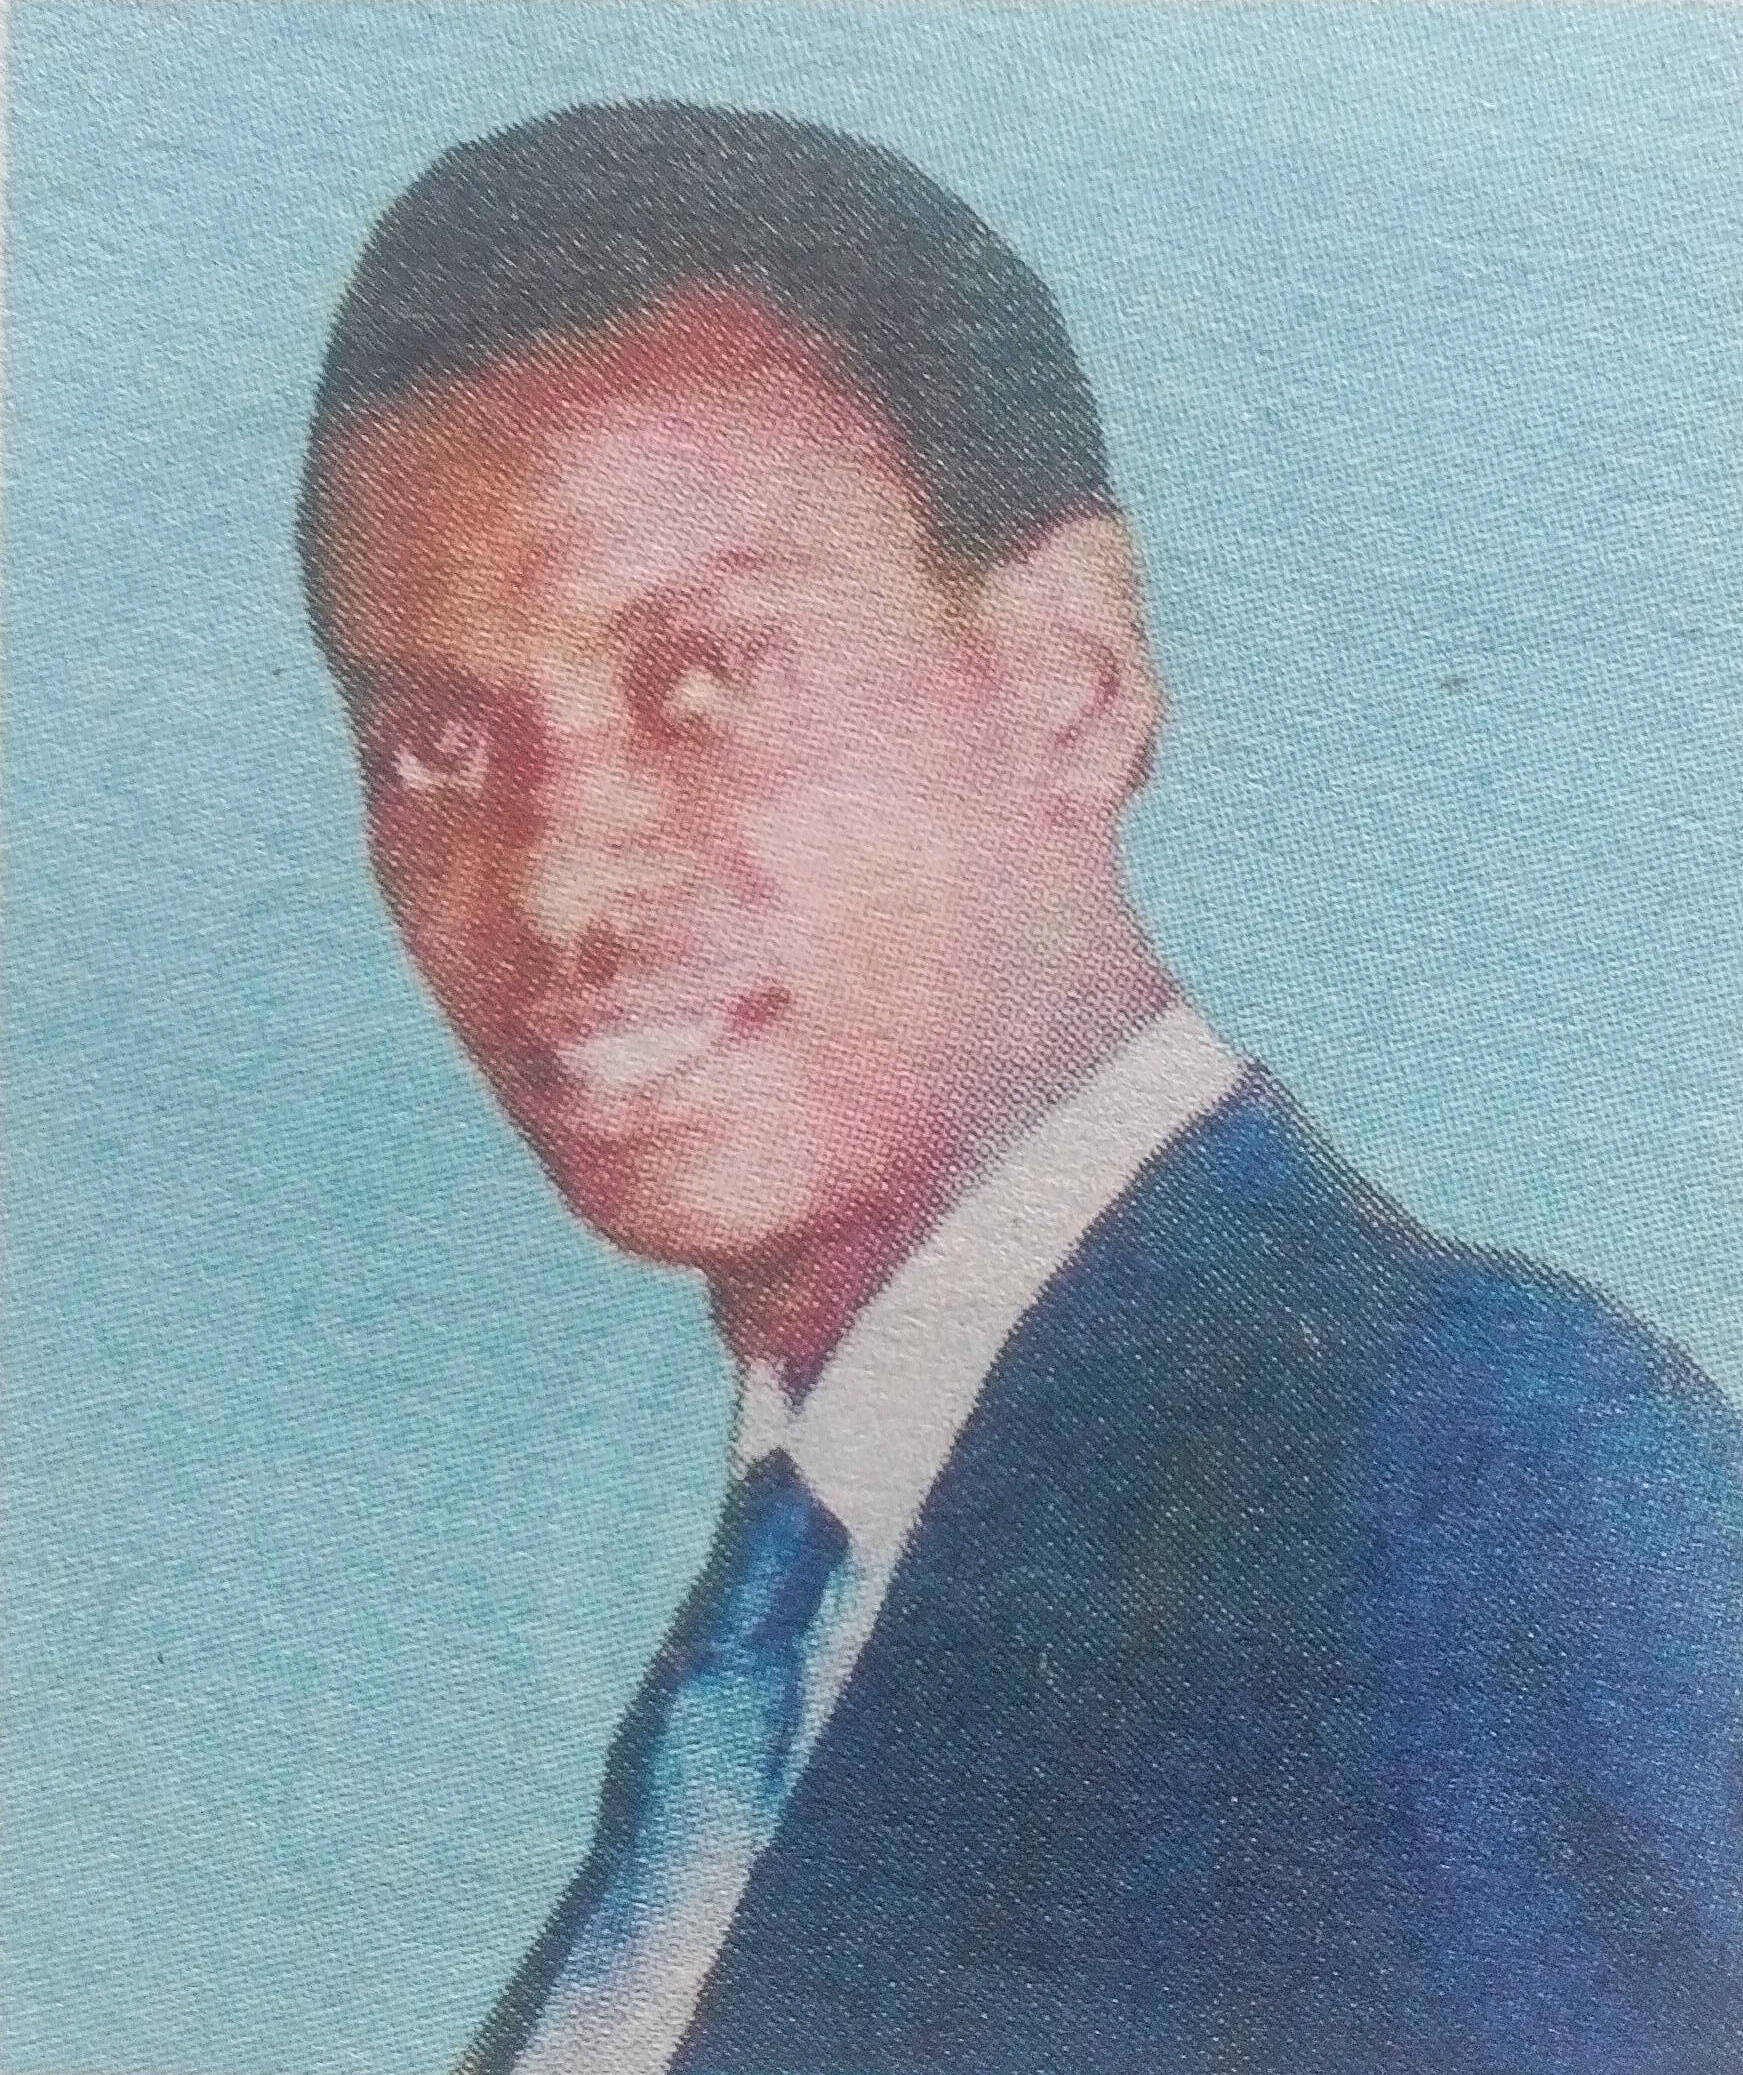 Obituary Image of Dr. Ricky Gatumu Ireri (Kalro Embu) 20/4/I 957-18/4/2017